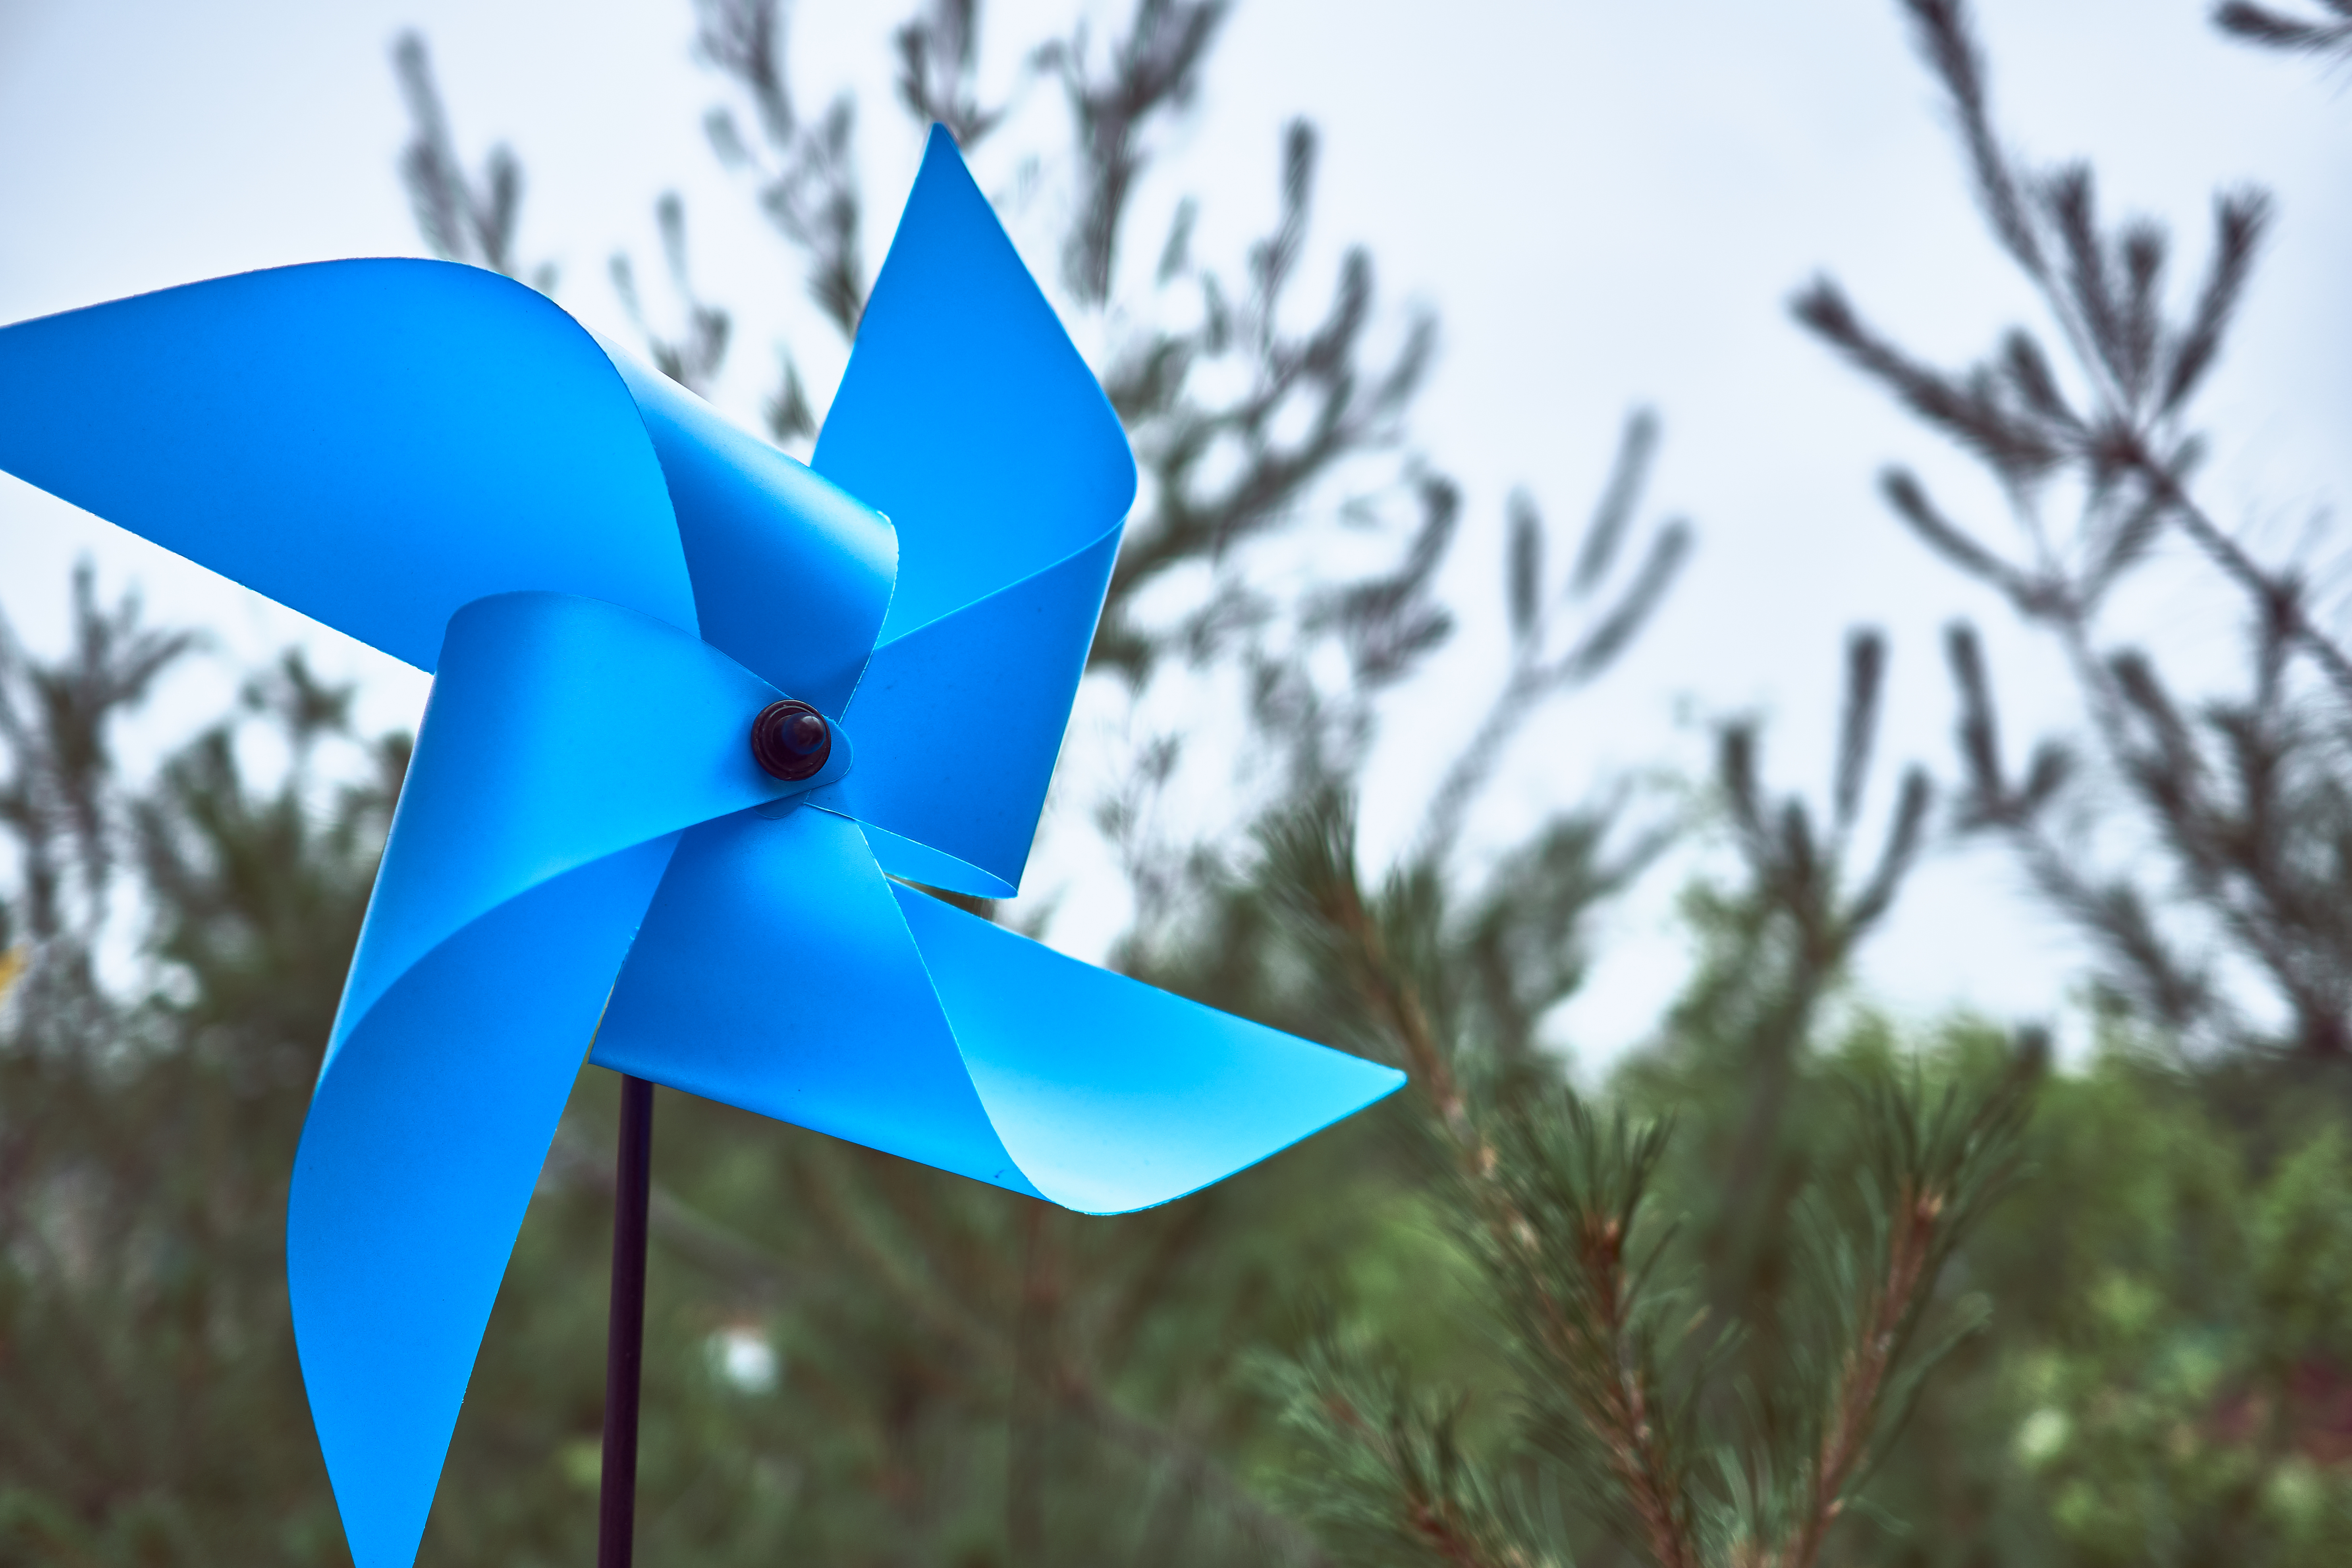 blue pinwheel